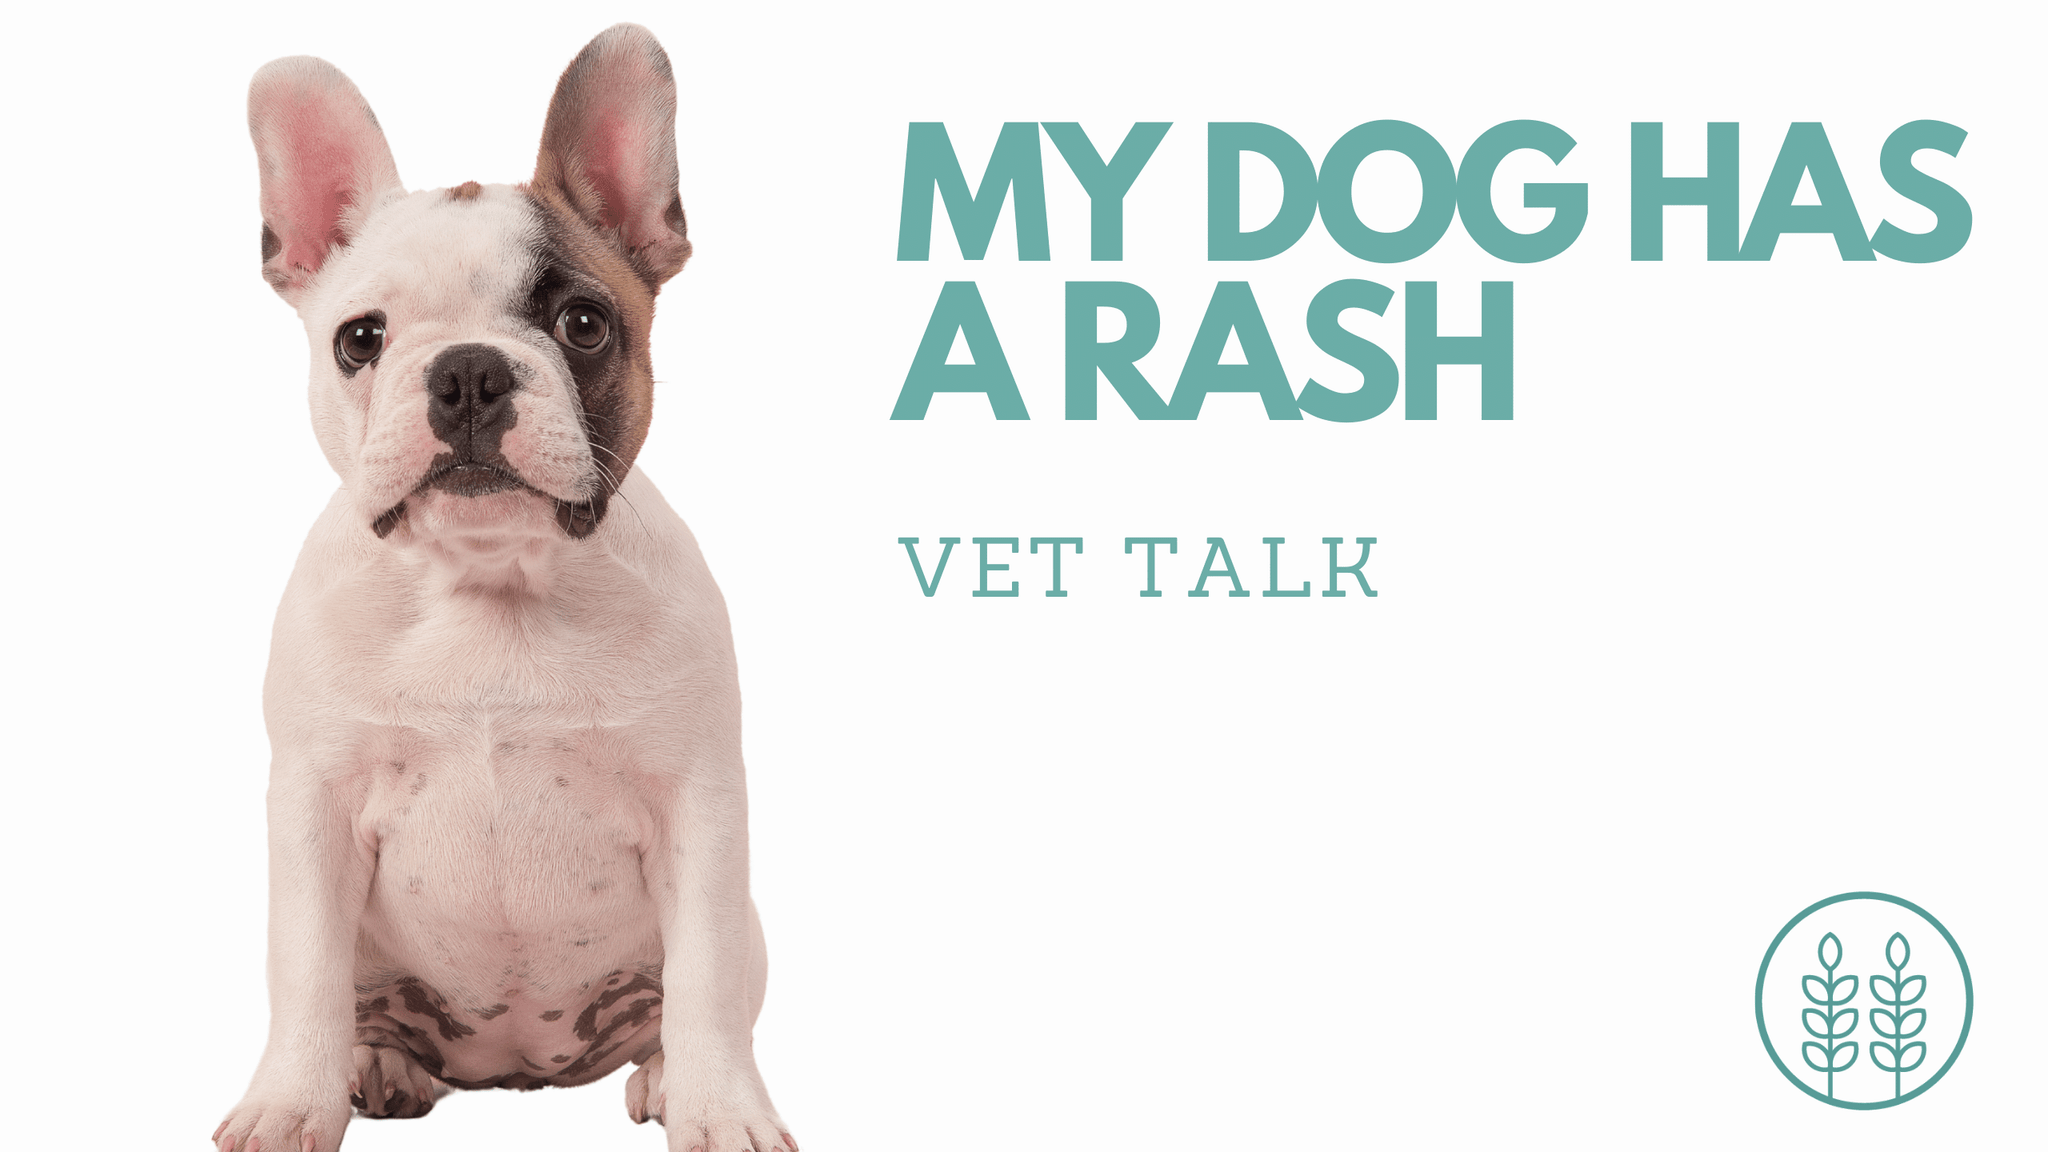 Q: My dog has a rash